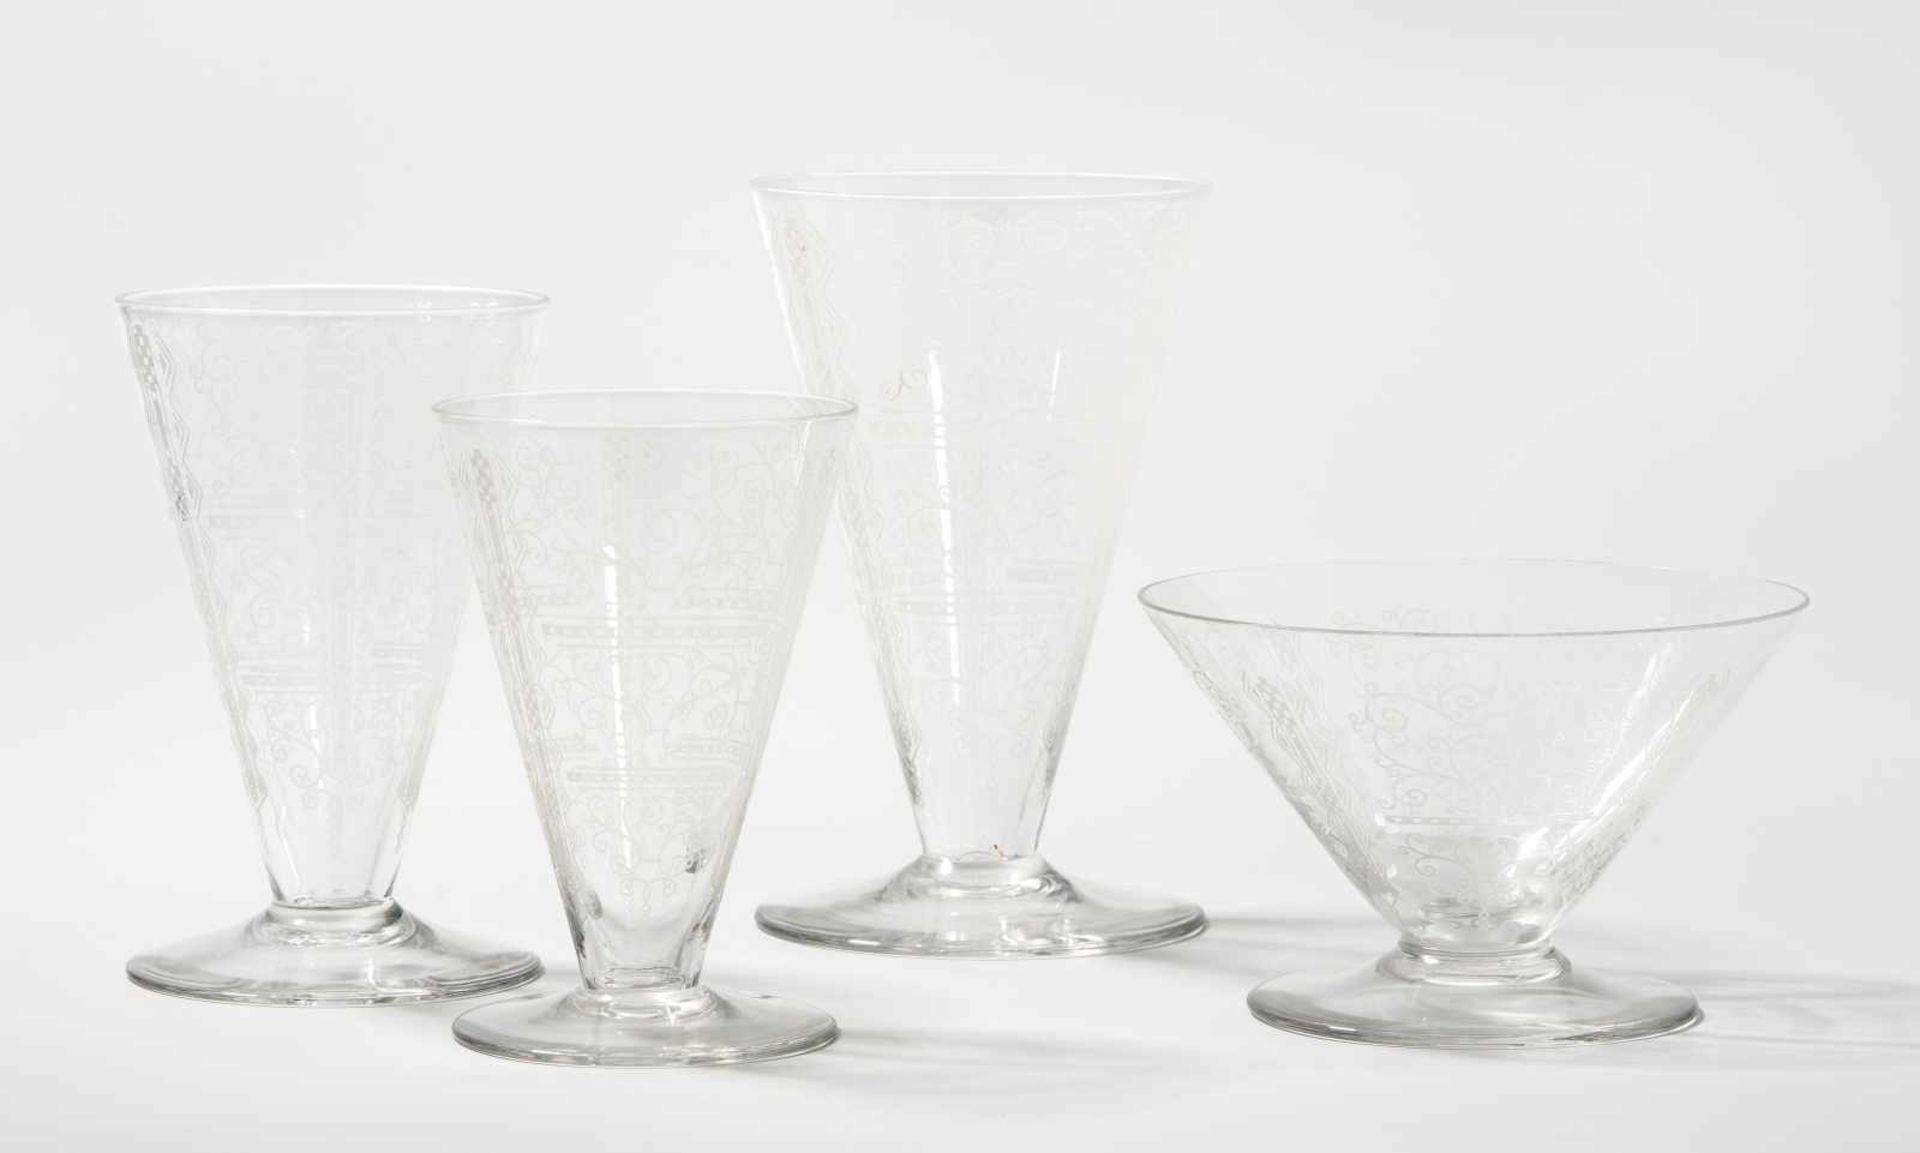 Gläserservice, Baccarat Um 1930. Modell "Lido". Farbloses Glas, gravierter Dekor von Arabesken und